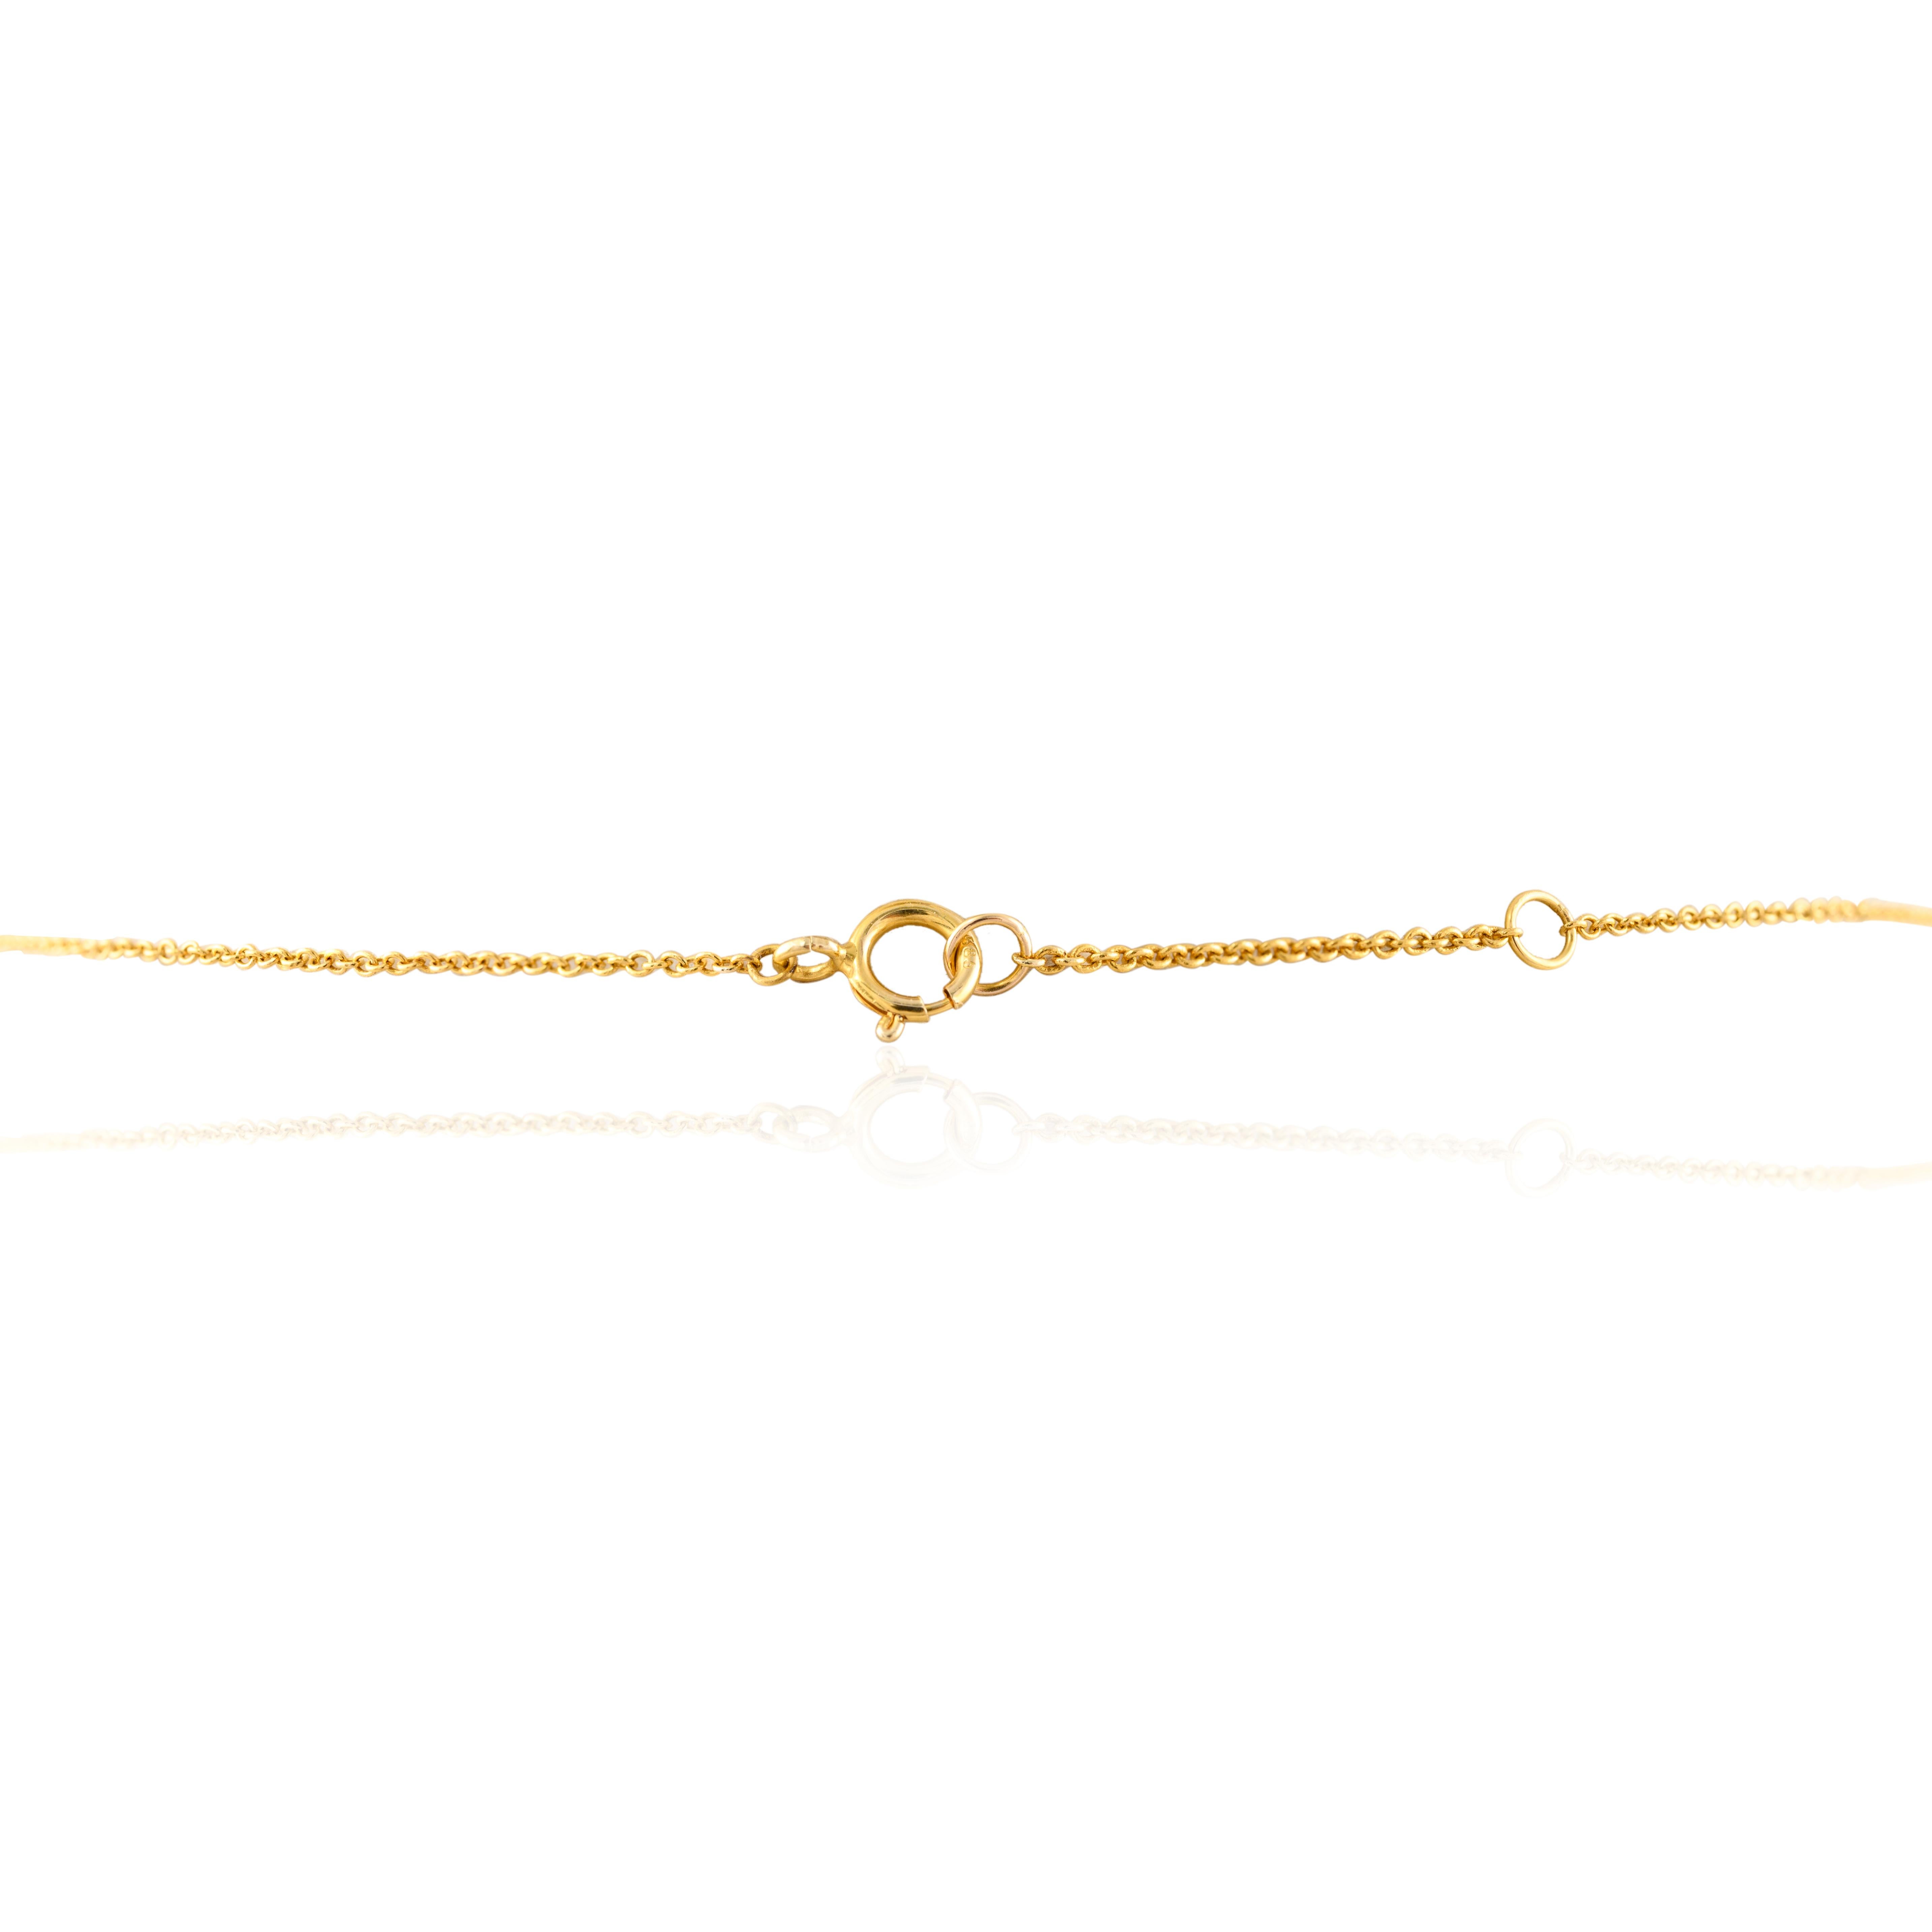 Taille brillant Chaîne collier étoilée en or jaune massif 14 carats, cadeau pour fille en vente